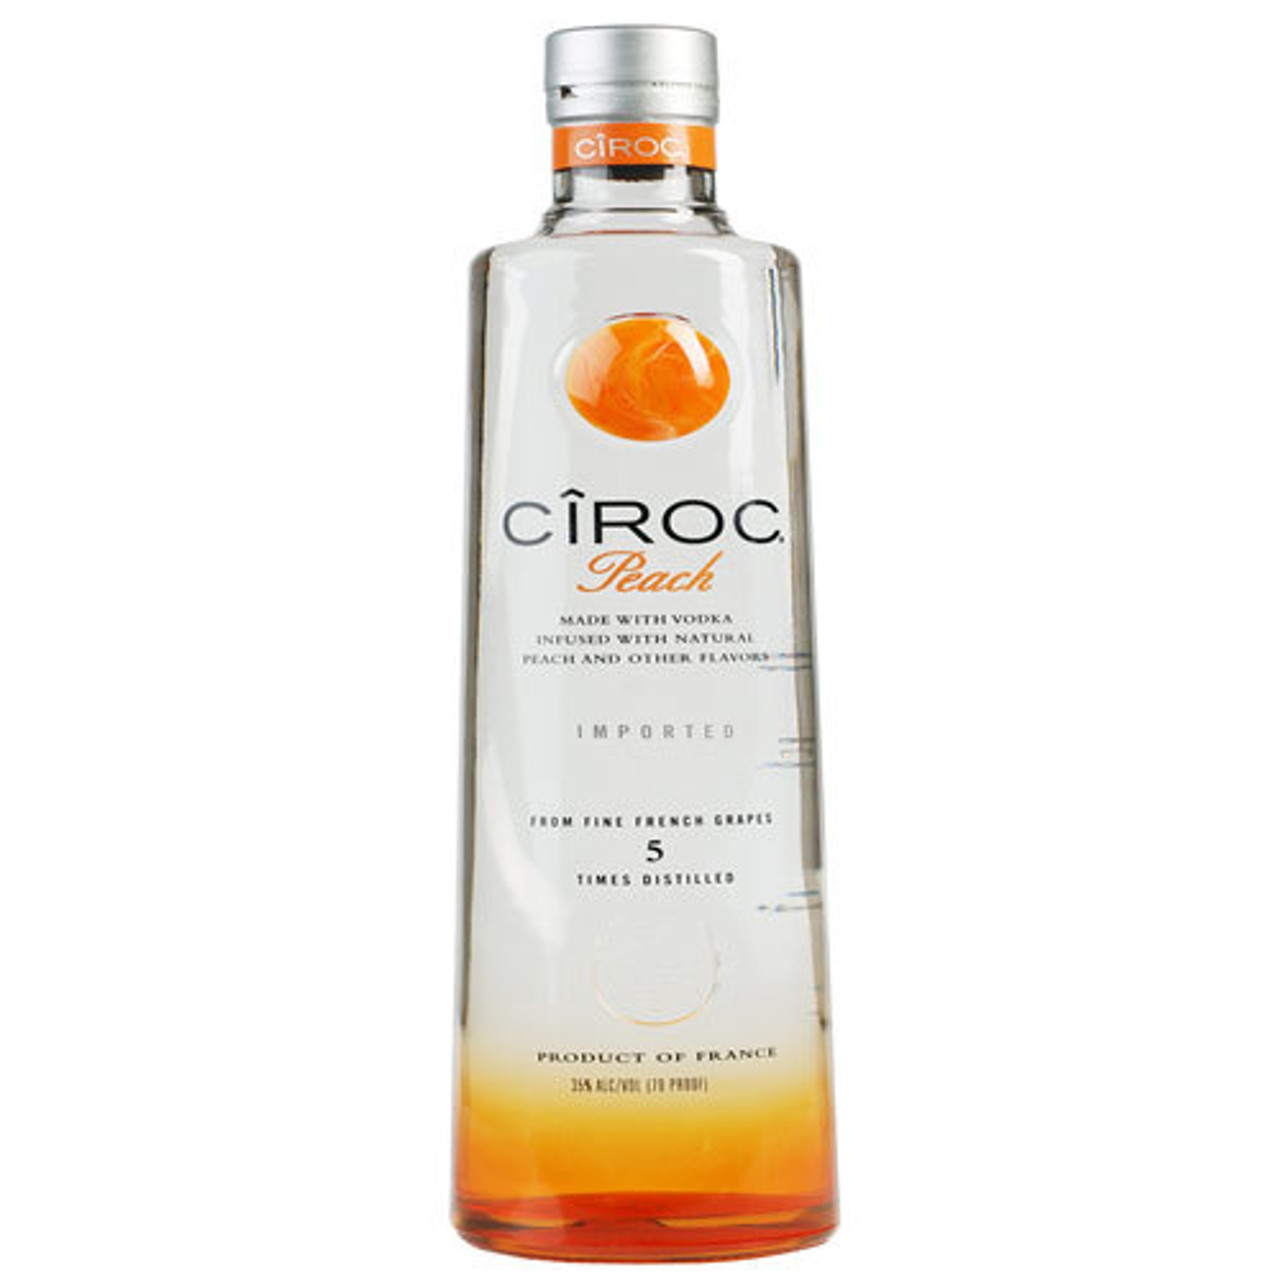 CIROC RED BERRY – BeverageWarehouse